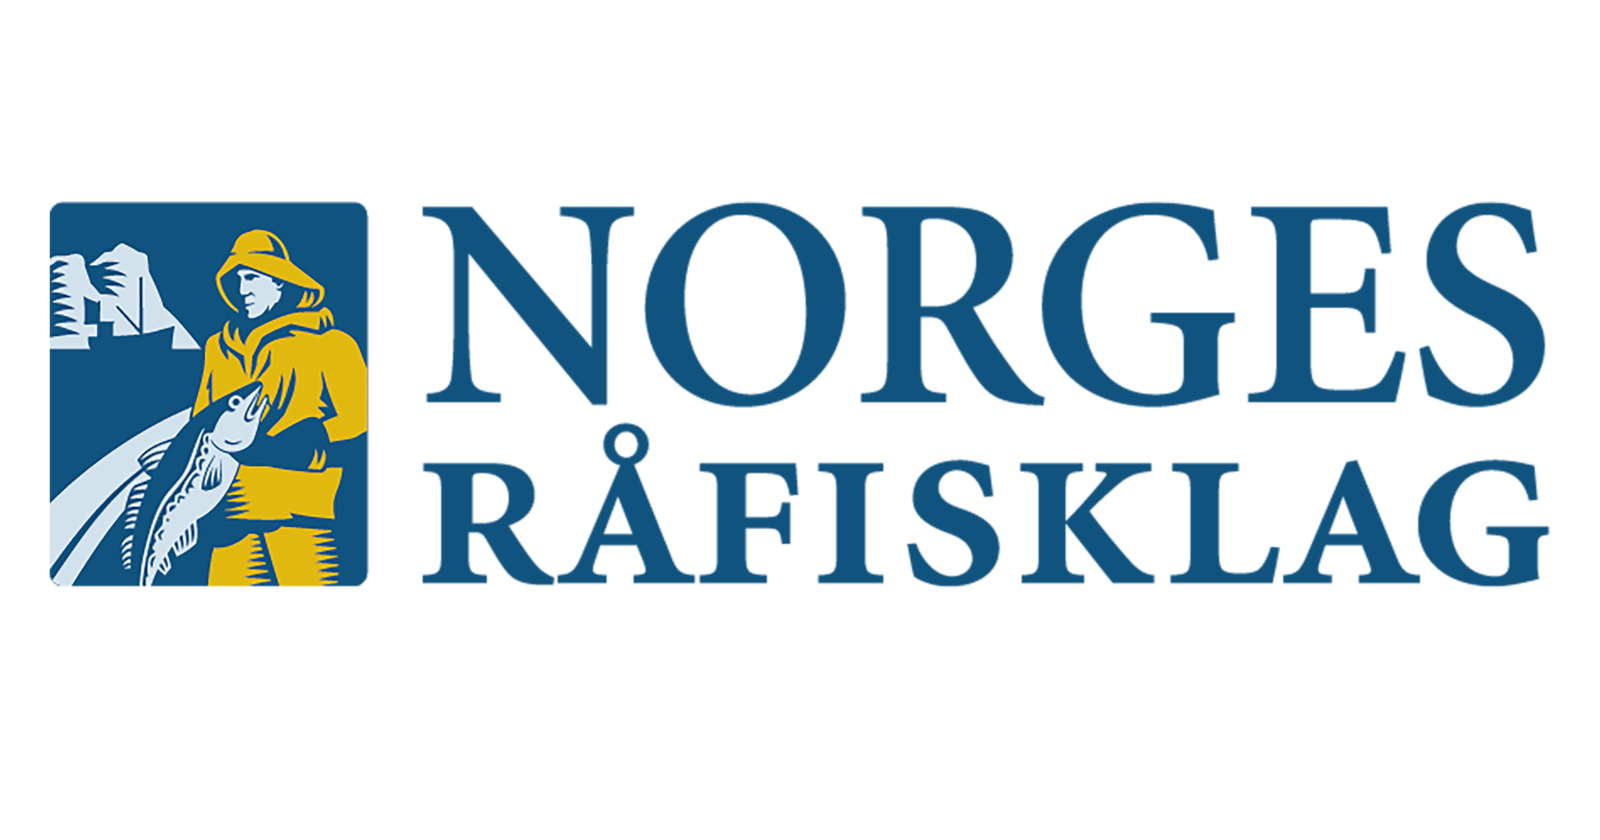 Norges Råfisklag hjemmeside